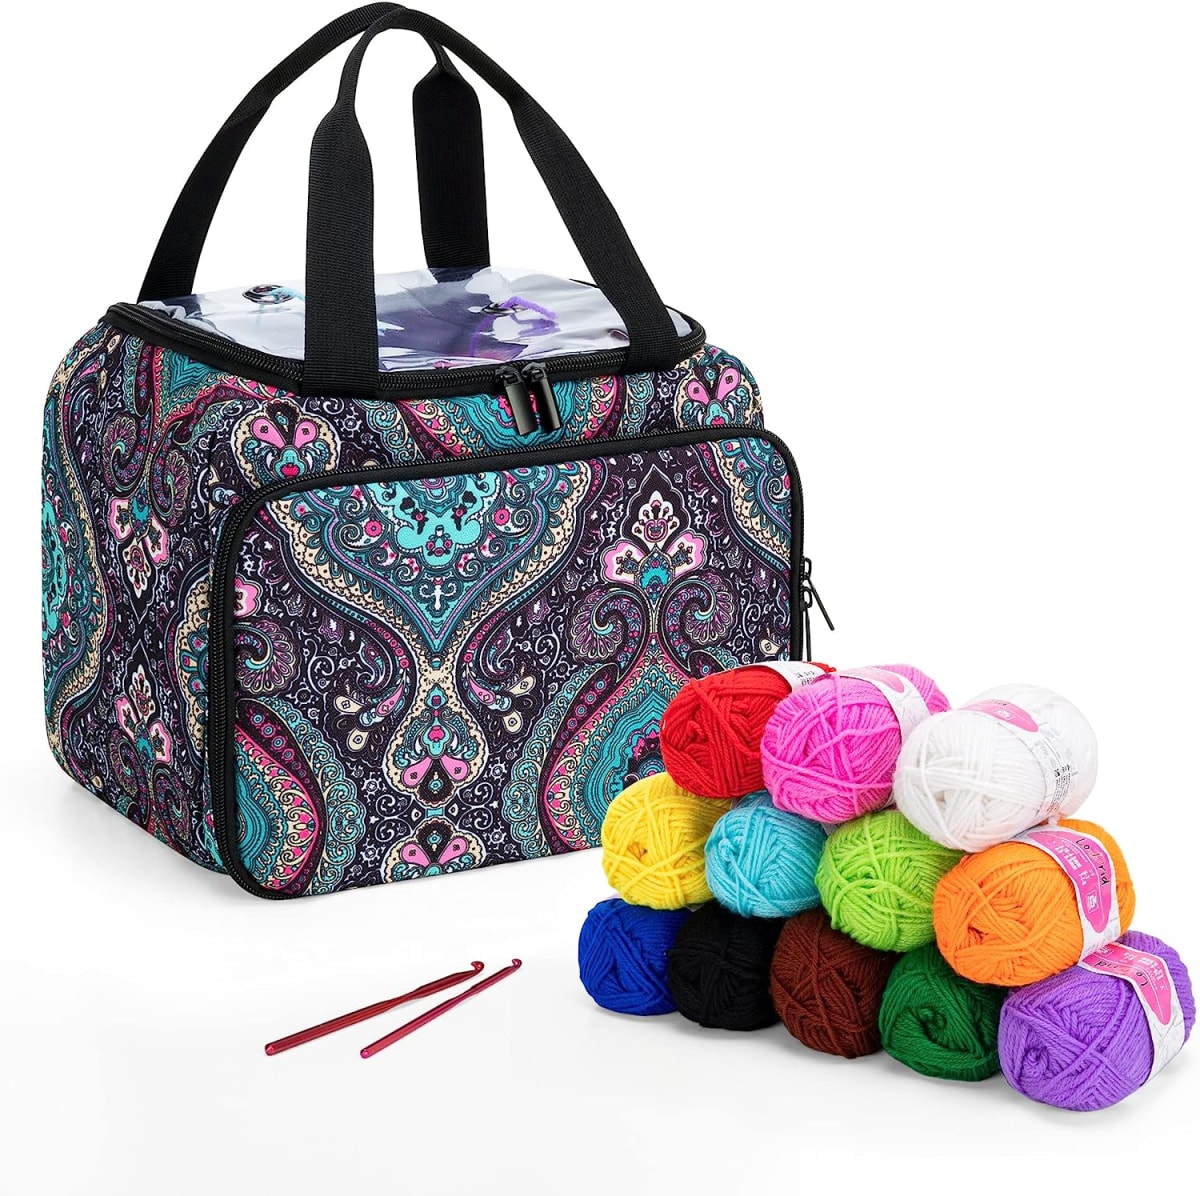 Knitting Starter Kit with 12(50g) Basic Colors Yarn & 2 Crochet Hooks